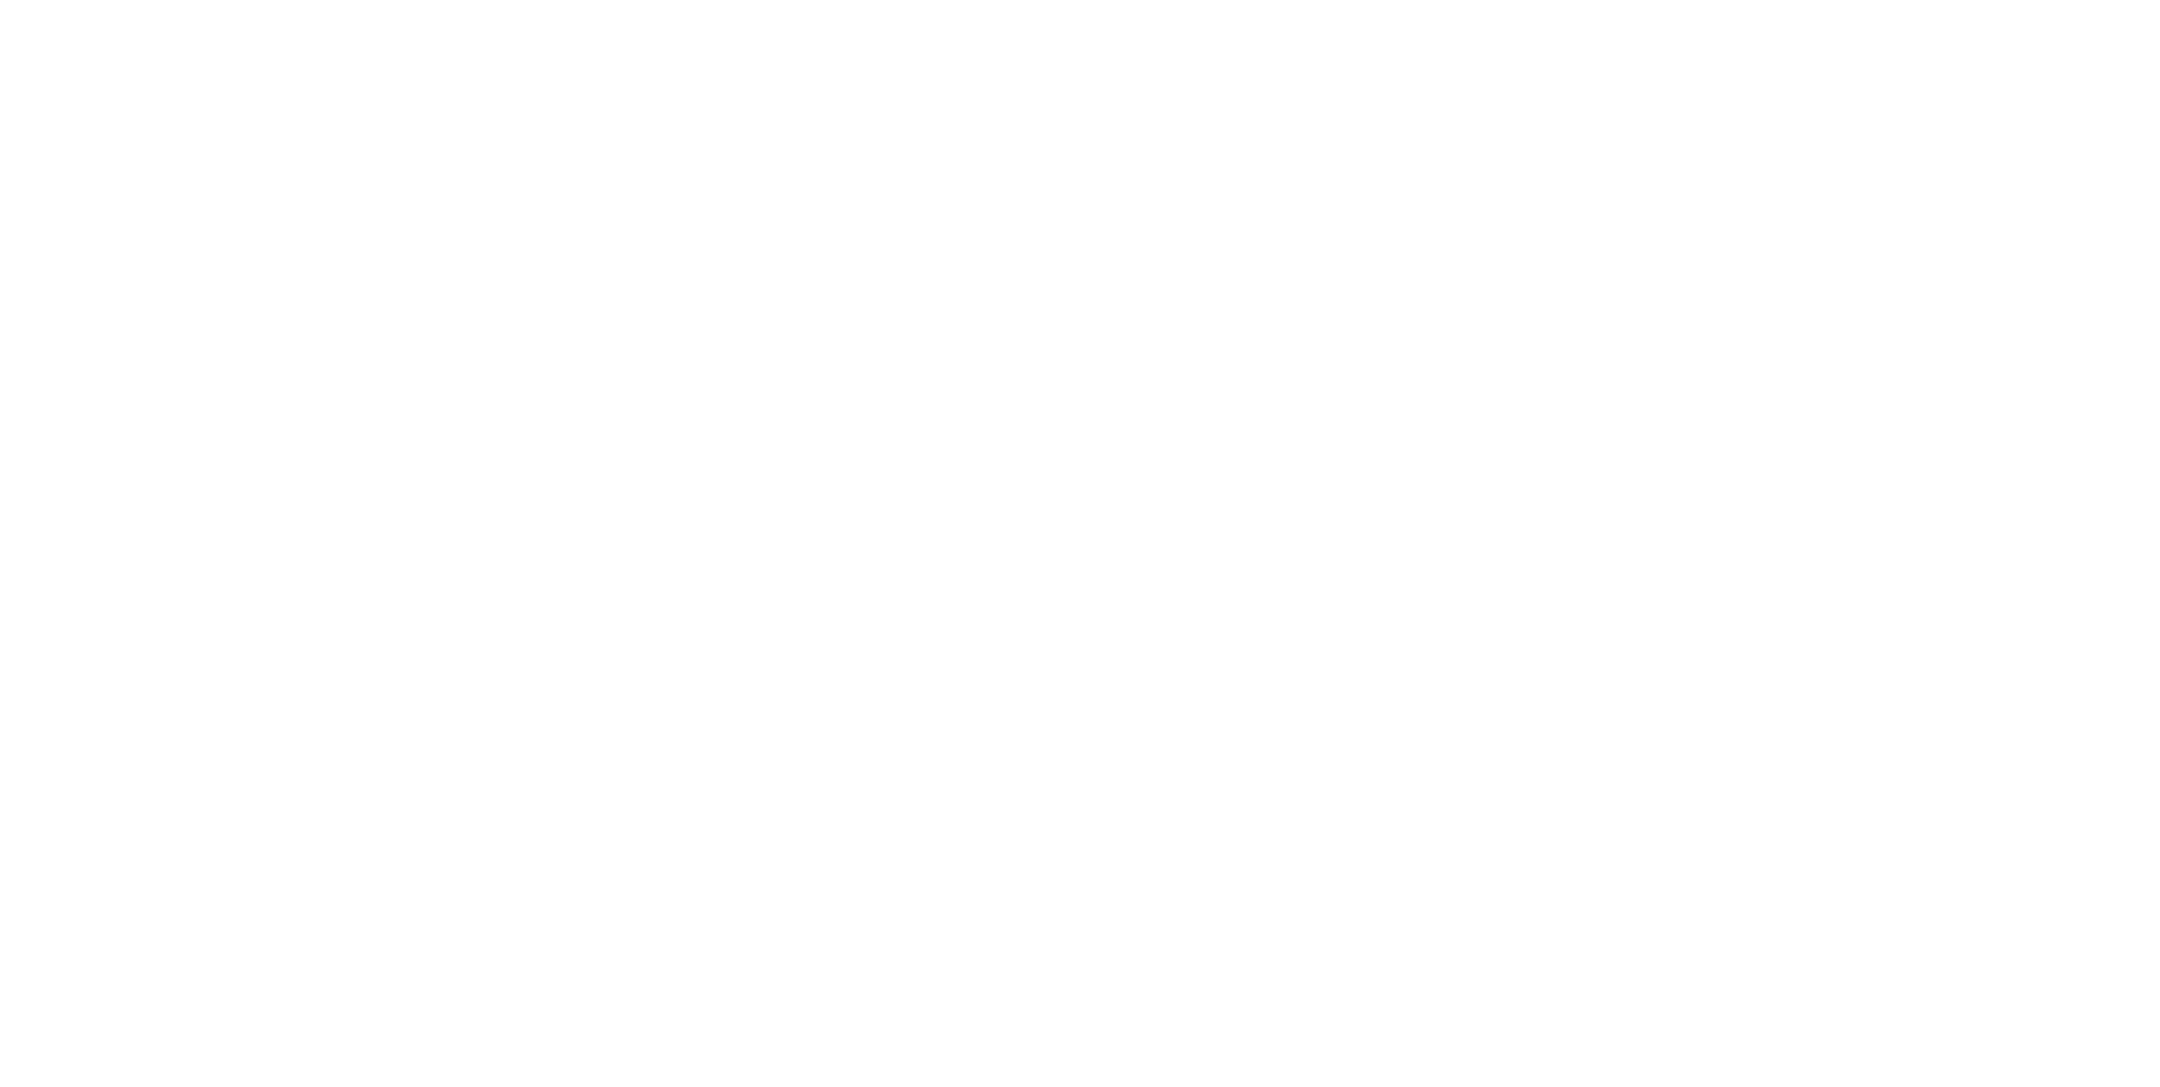 Tfactor